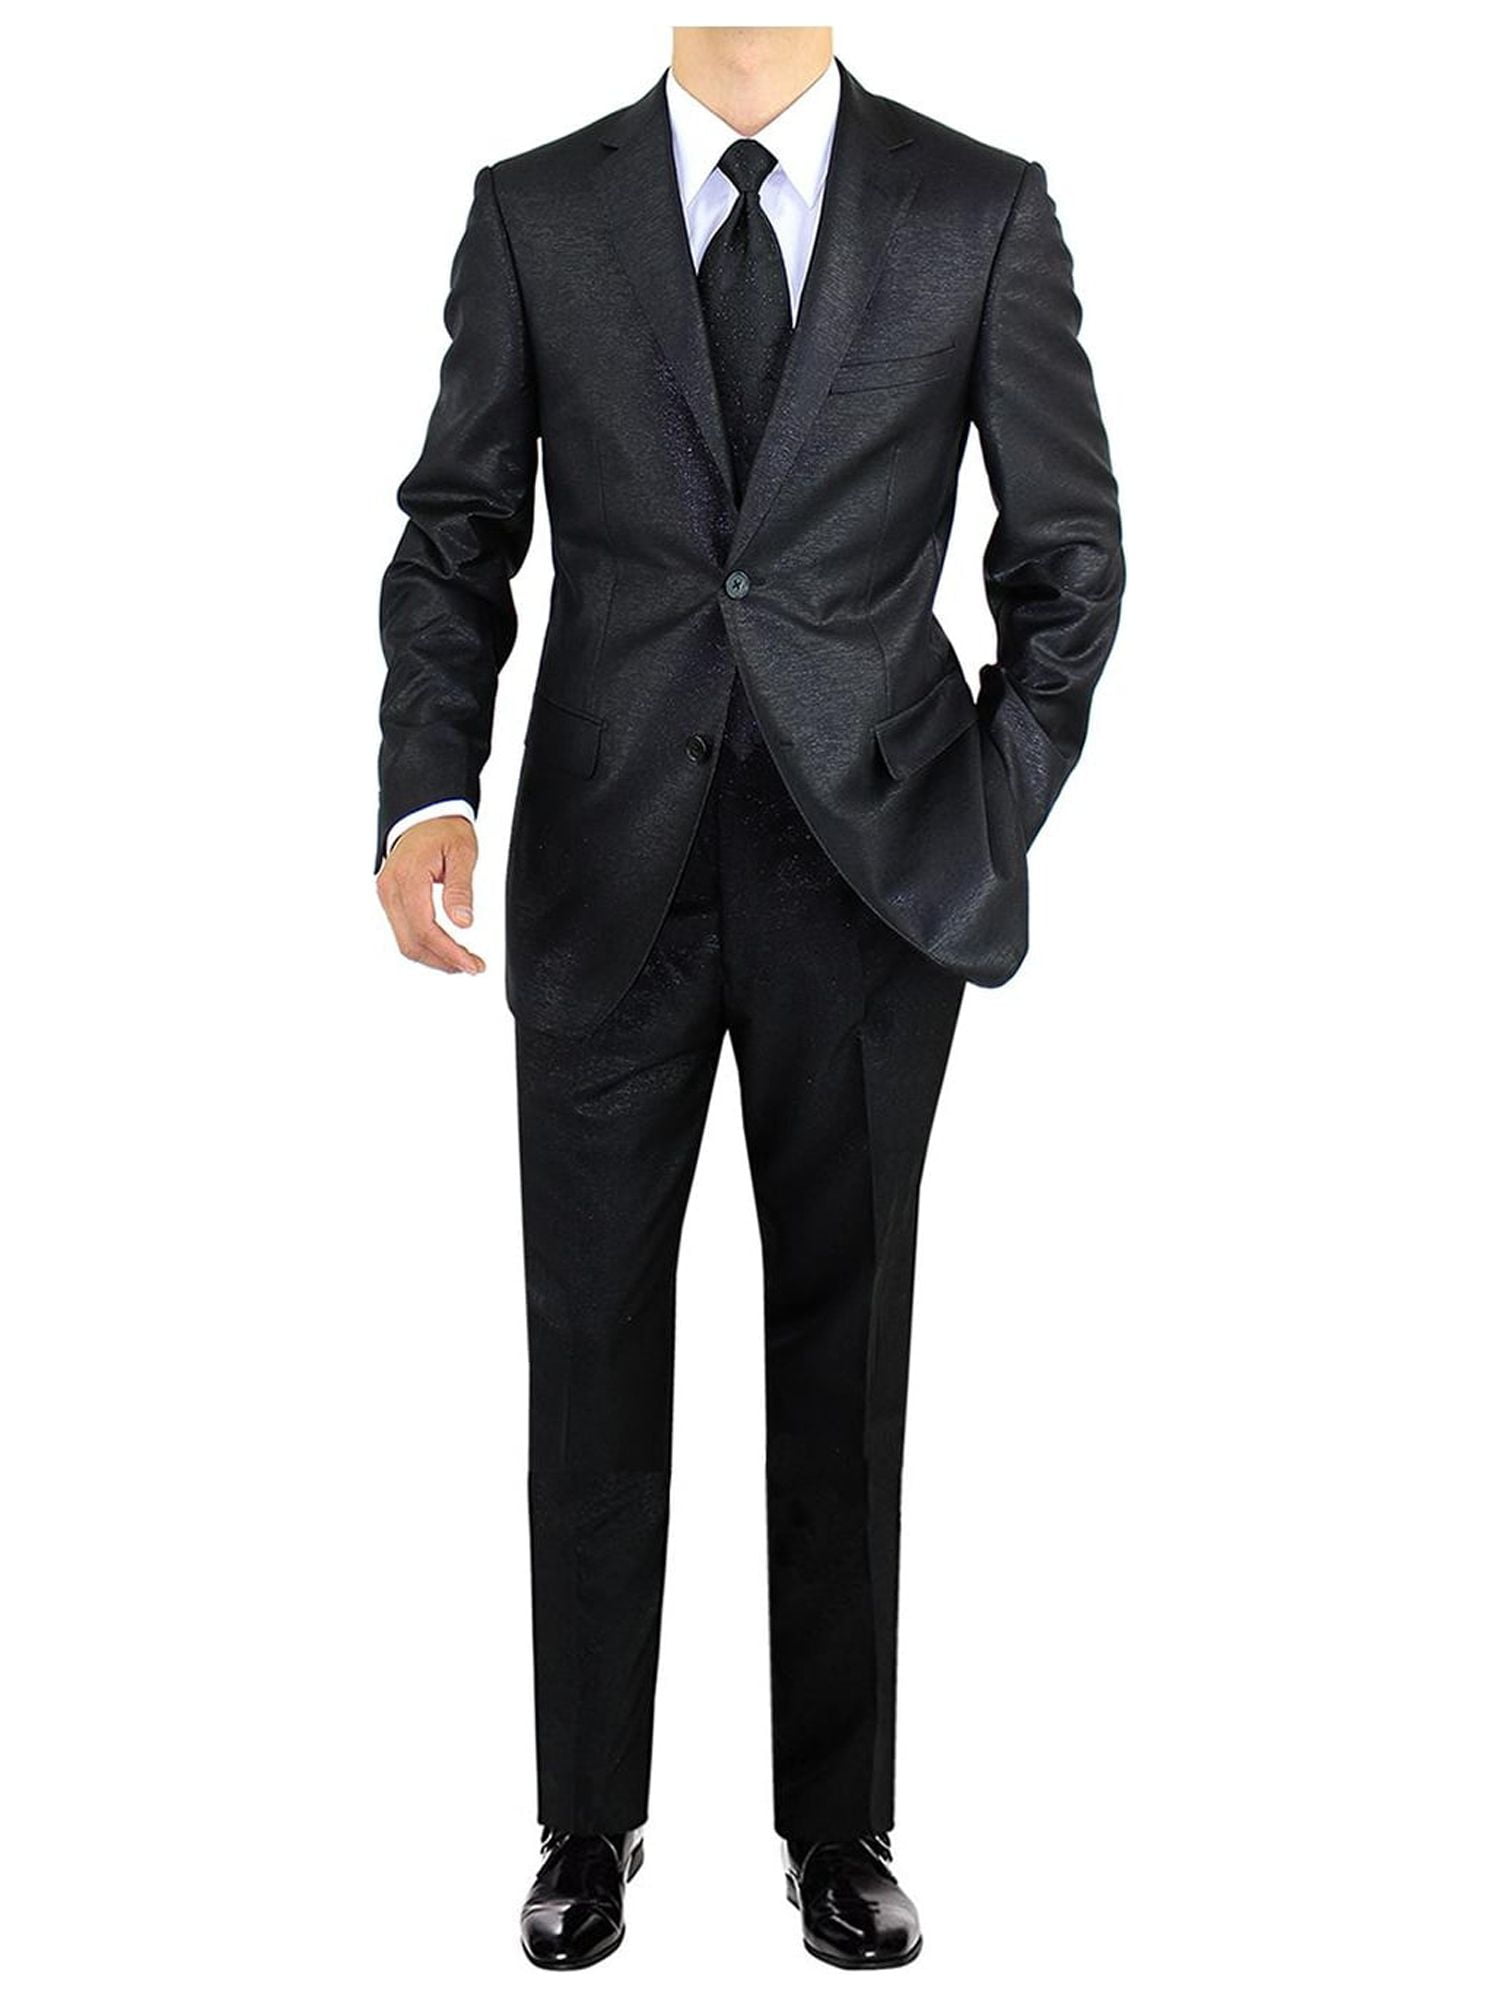 Men's 2 Button Avant Garde Formal Fashion Suit - Walmart.com